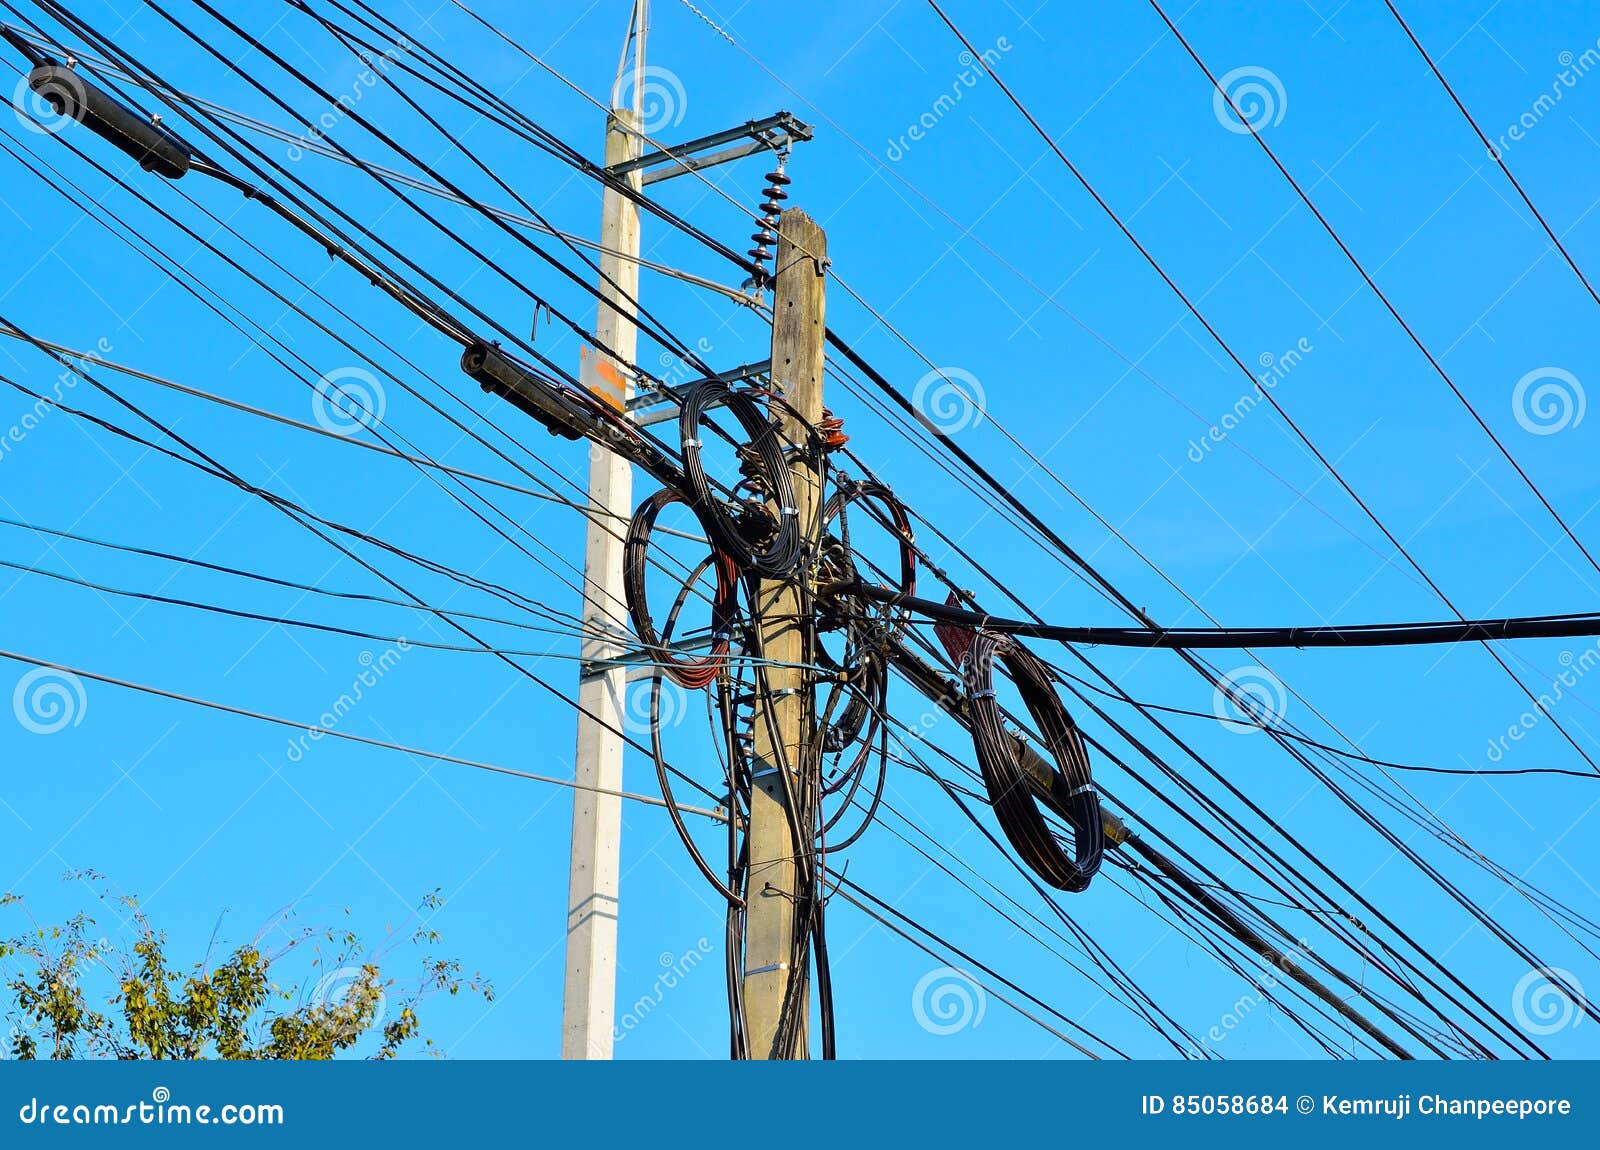 Конец провода как называется. Как называются провода на Столбах. Подвесить провода со здания на здание. Как провода называют в строительстве. Как называются провода которые находятся на улице.